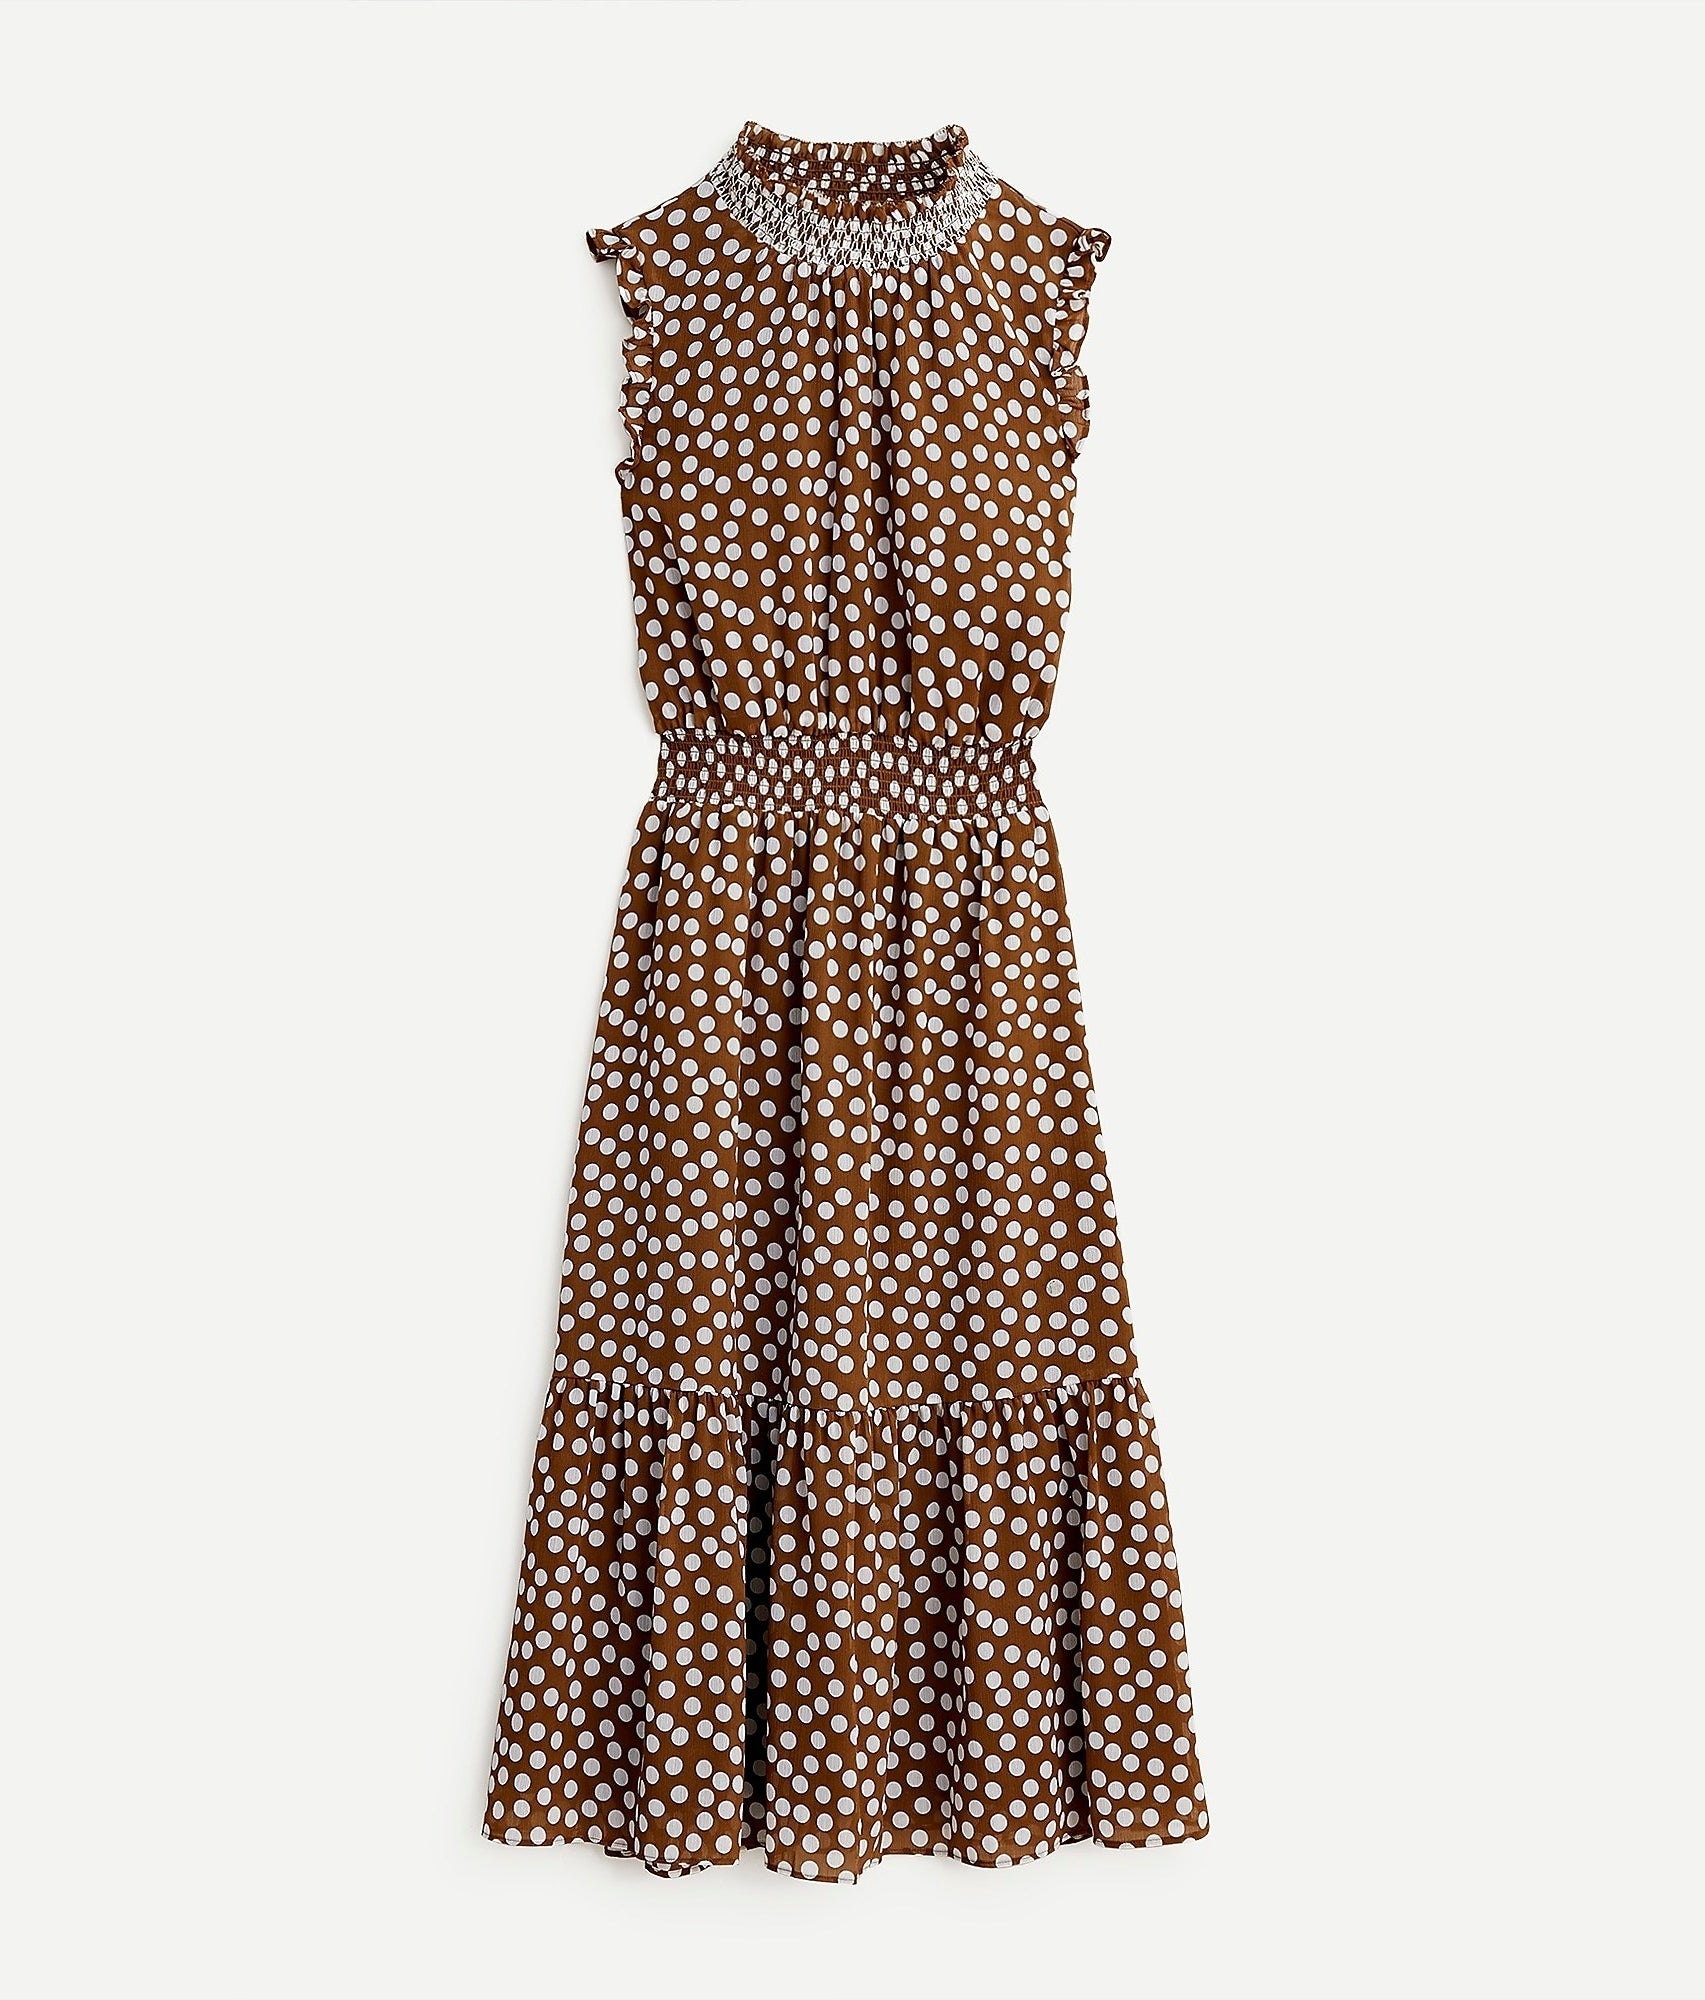 brown and tan polka dot sleeveless midi dress with high neck